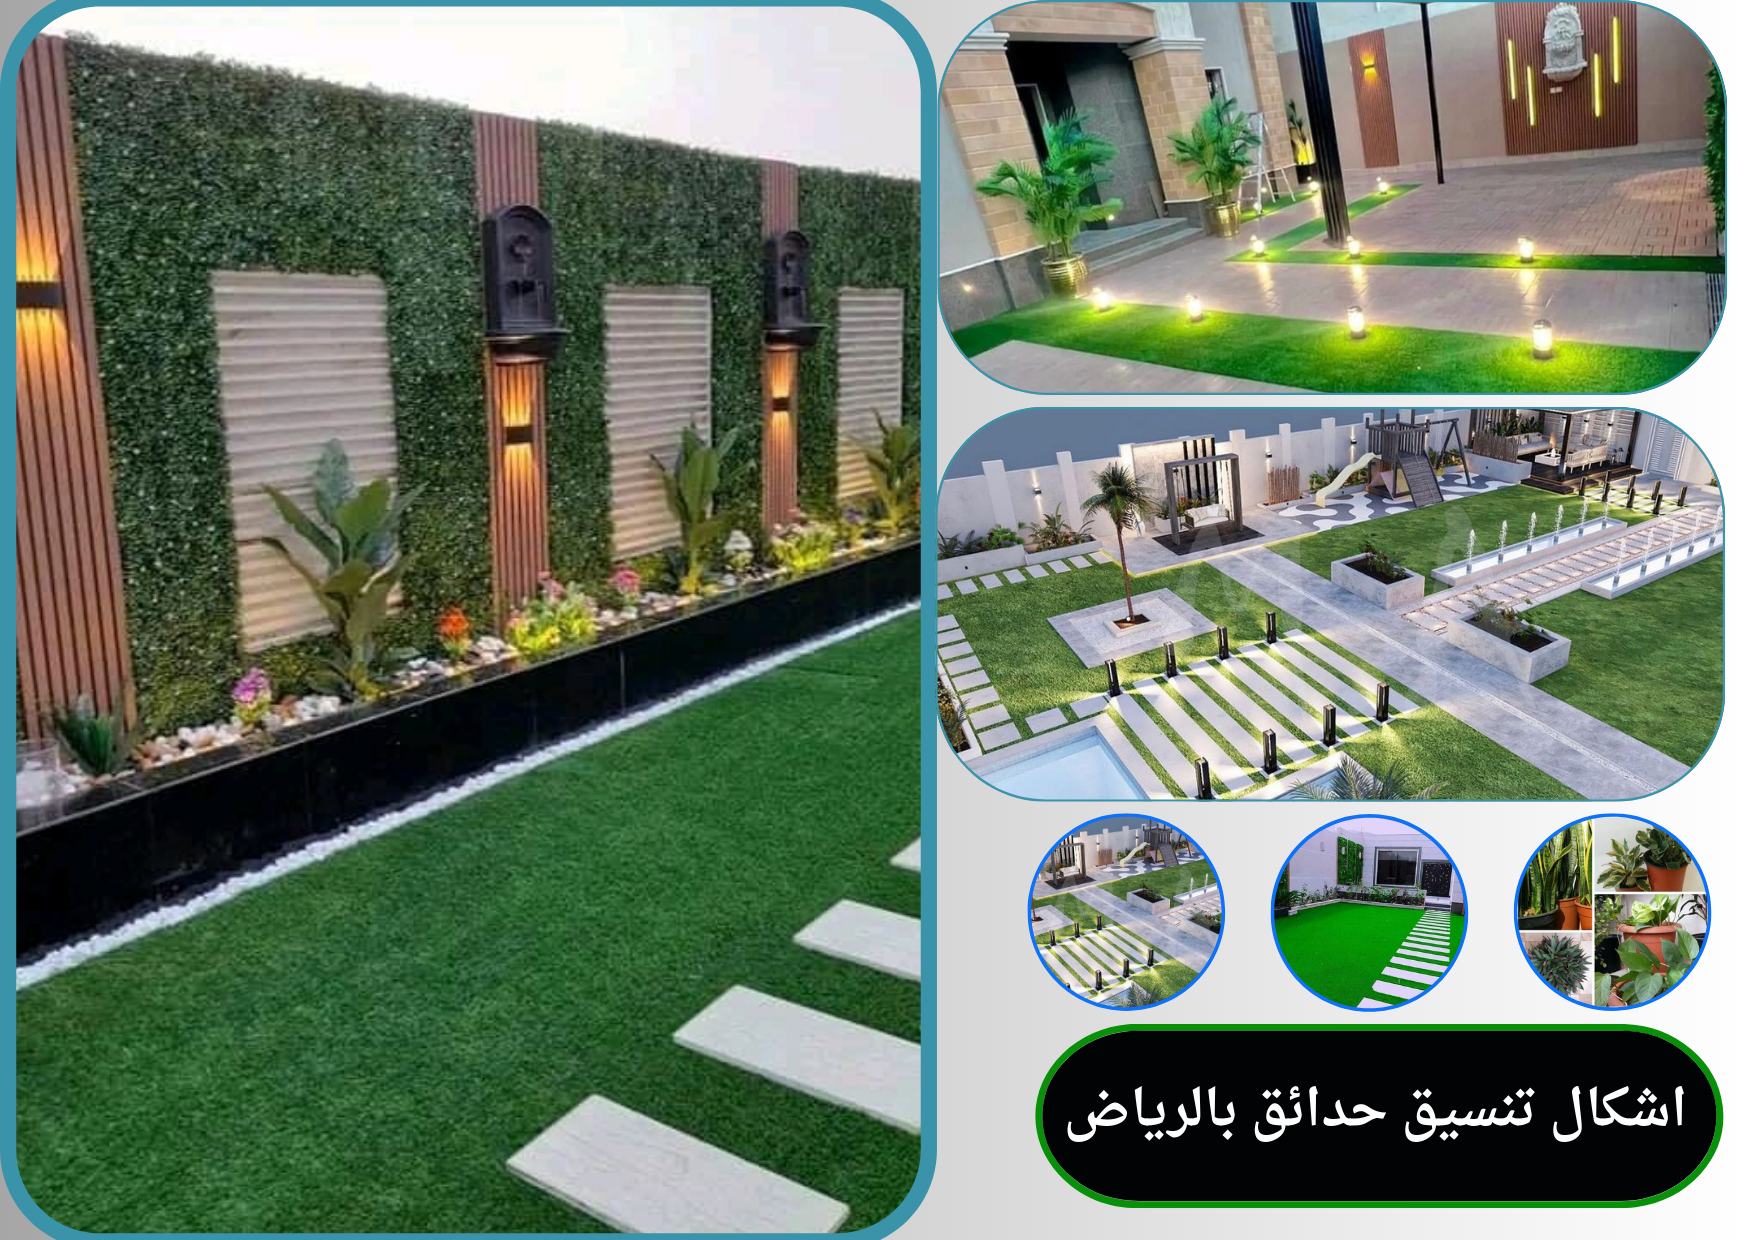 اشكال تنسيق حدائق بالرياض بأجود الخامات والأشكال المبتكرة في الرياض